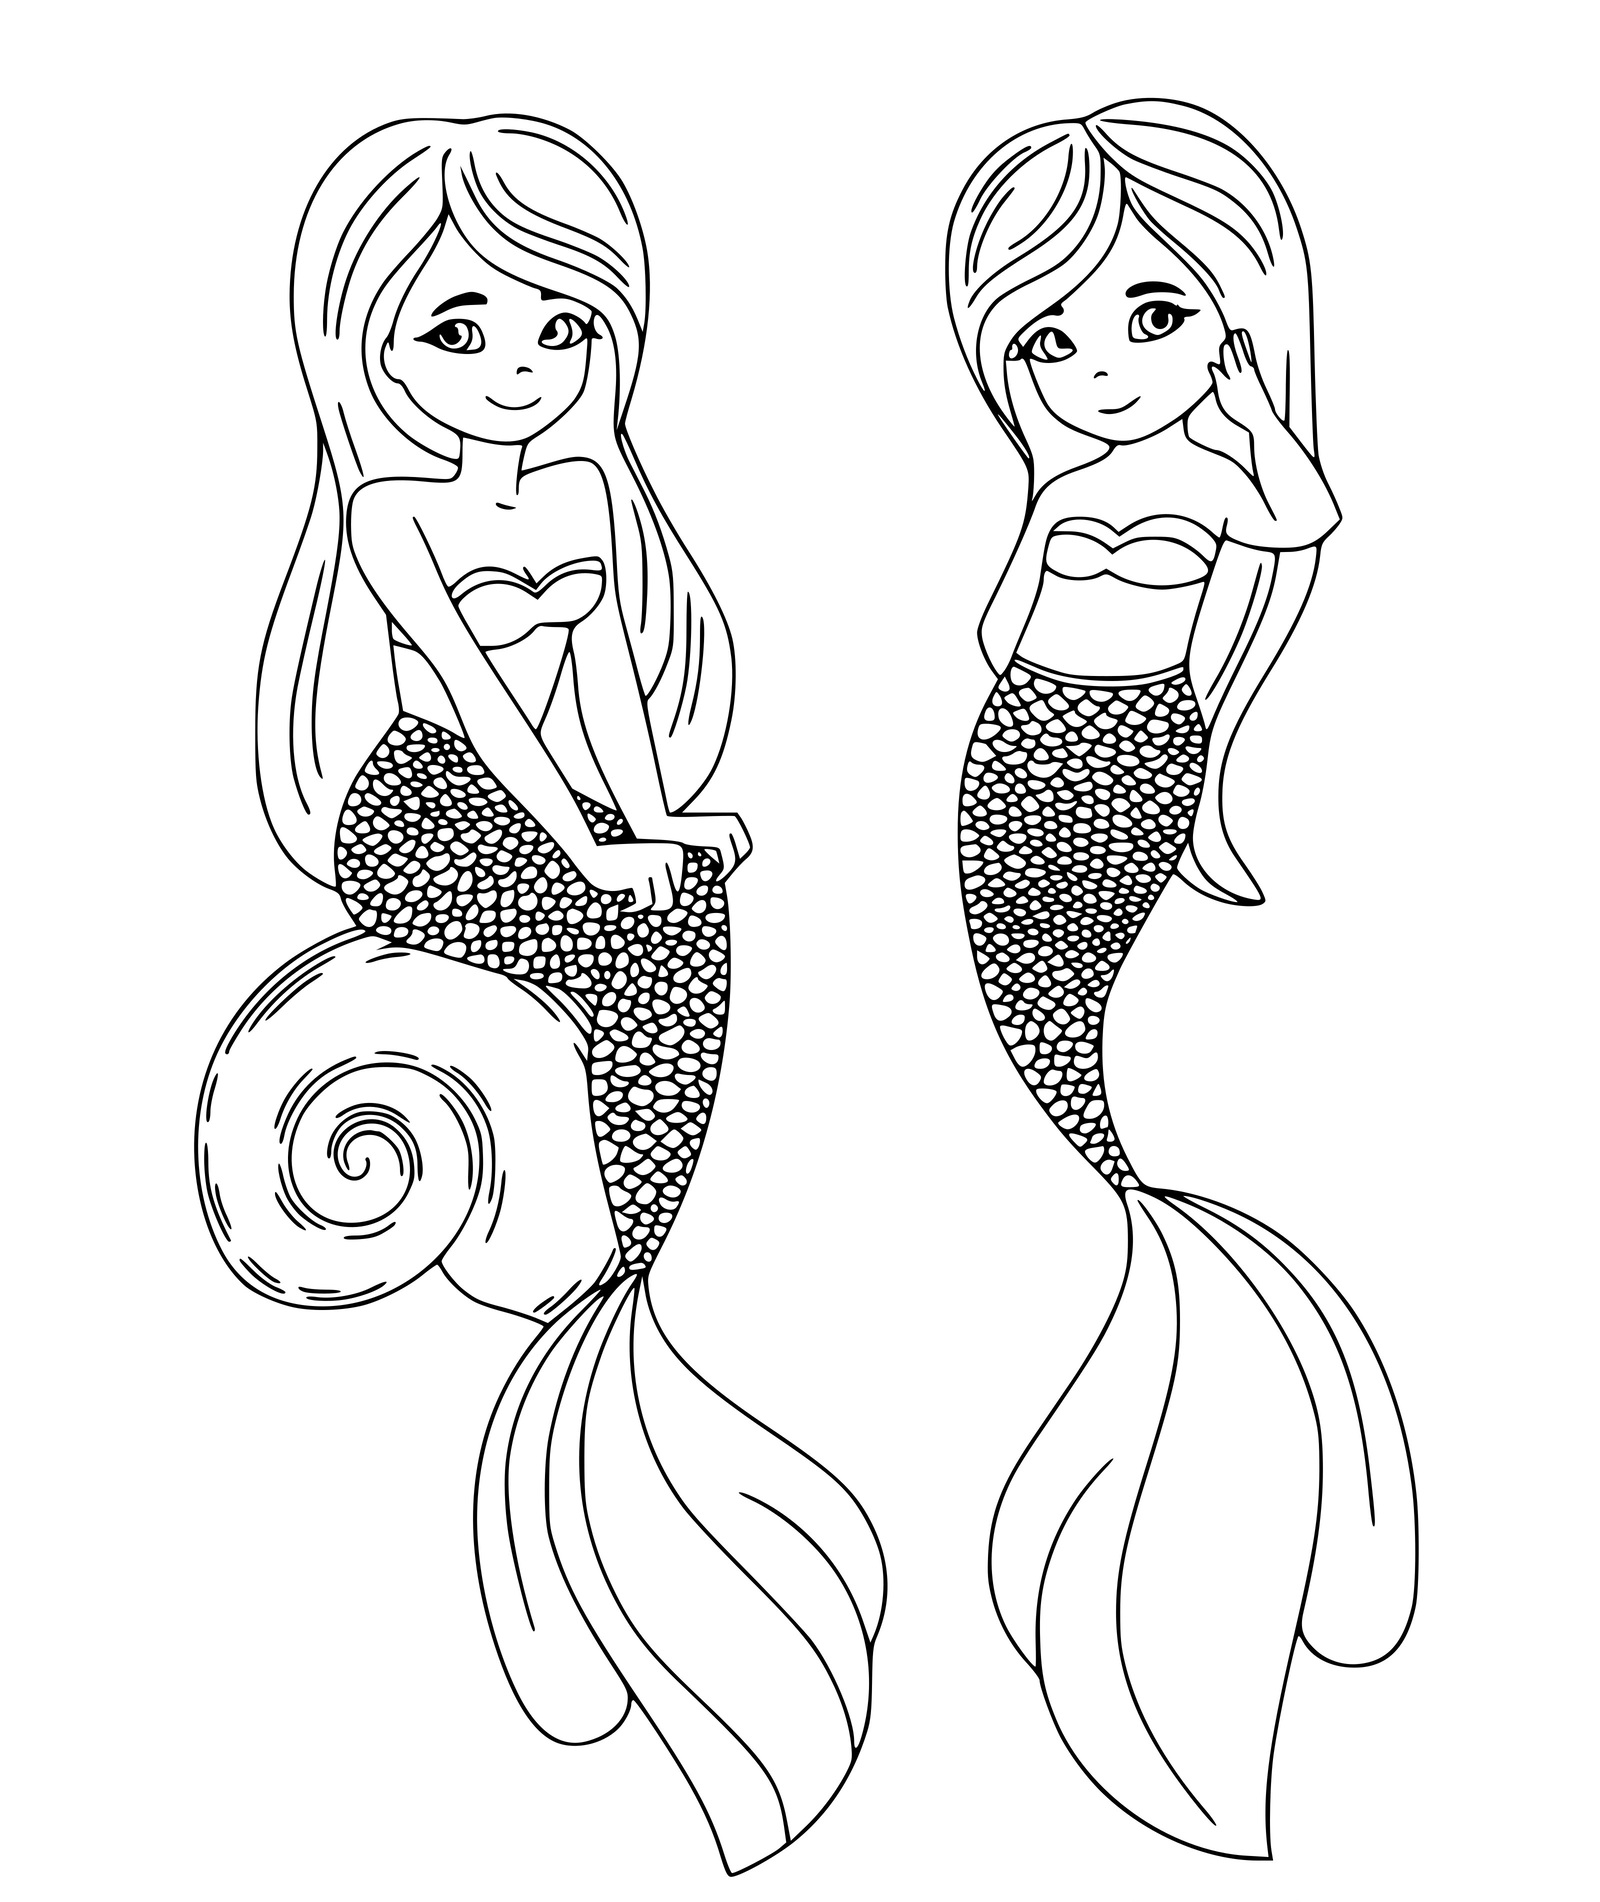 Two Sweet Sister Mermaids